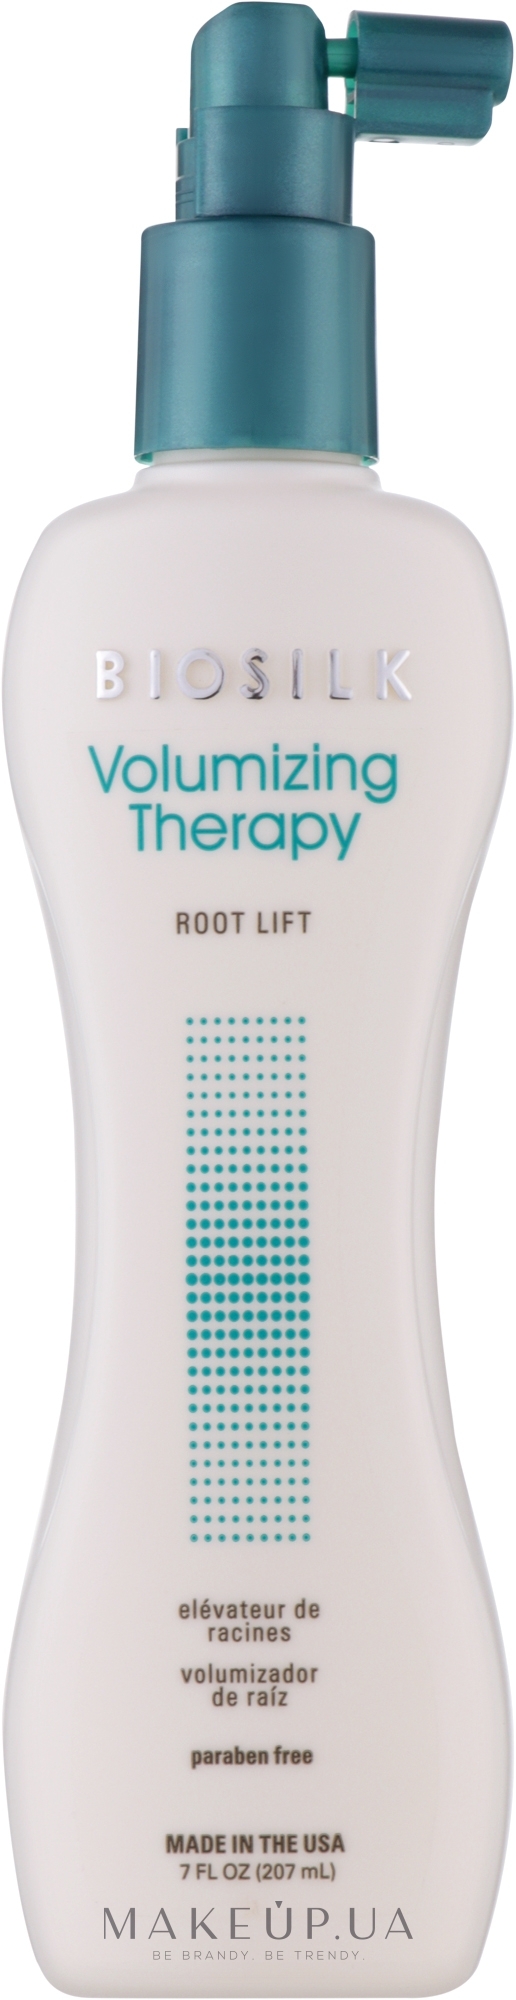 Спрей для додання прикореневого об'єму - BioSilk Volumizing Therapy Root Lifter — фото 207ml